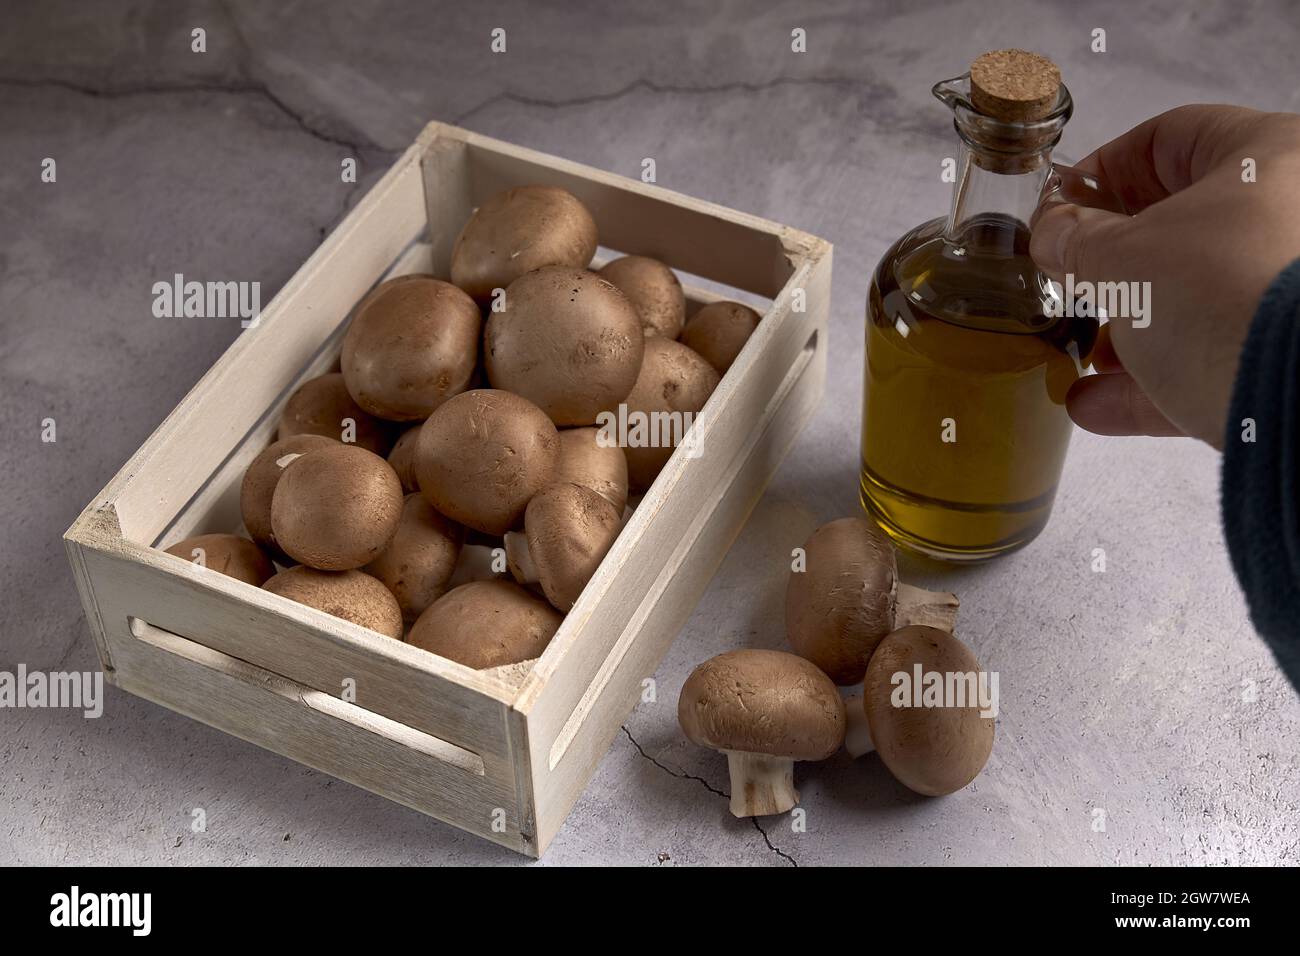 Grupo de setas Portobello en una caja de madera junto a un tarro de aceite Foto de stock